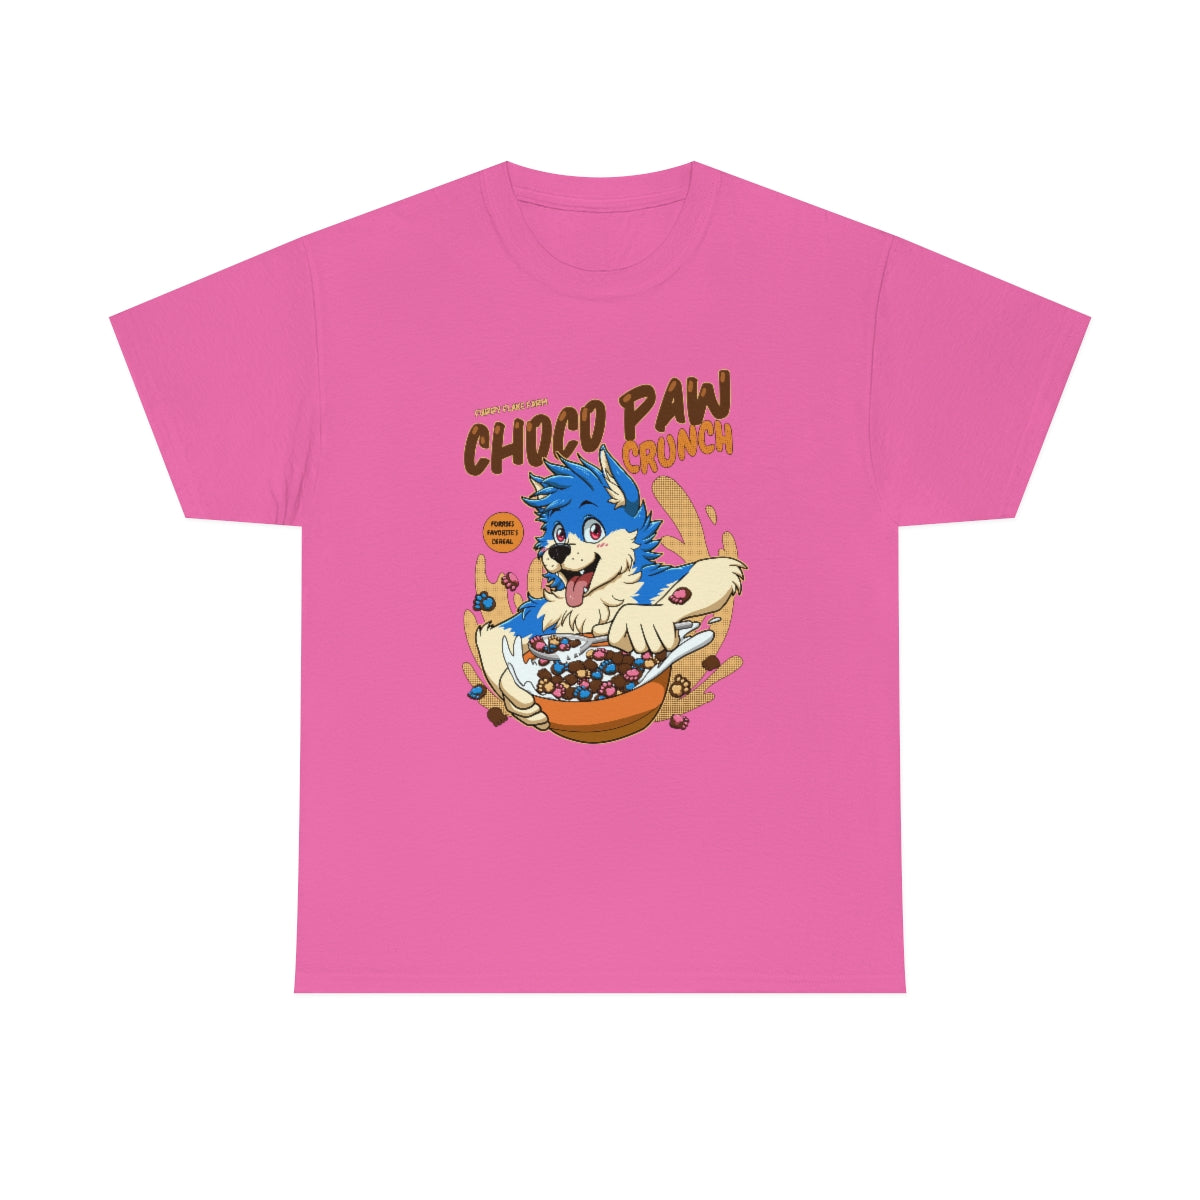 Choco Paw - T-Shirt T-Shirt Artworktee Pink S 